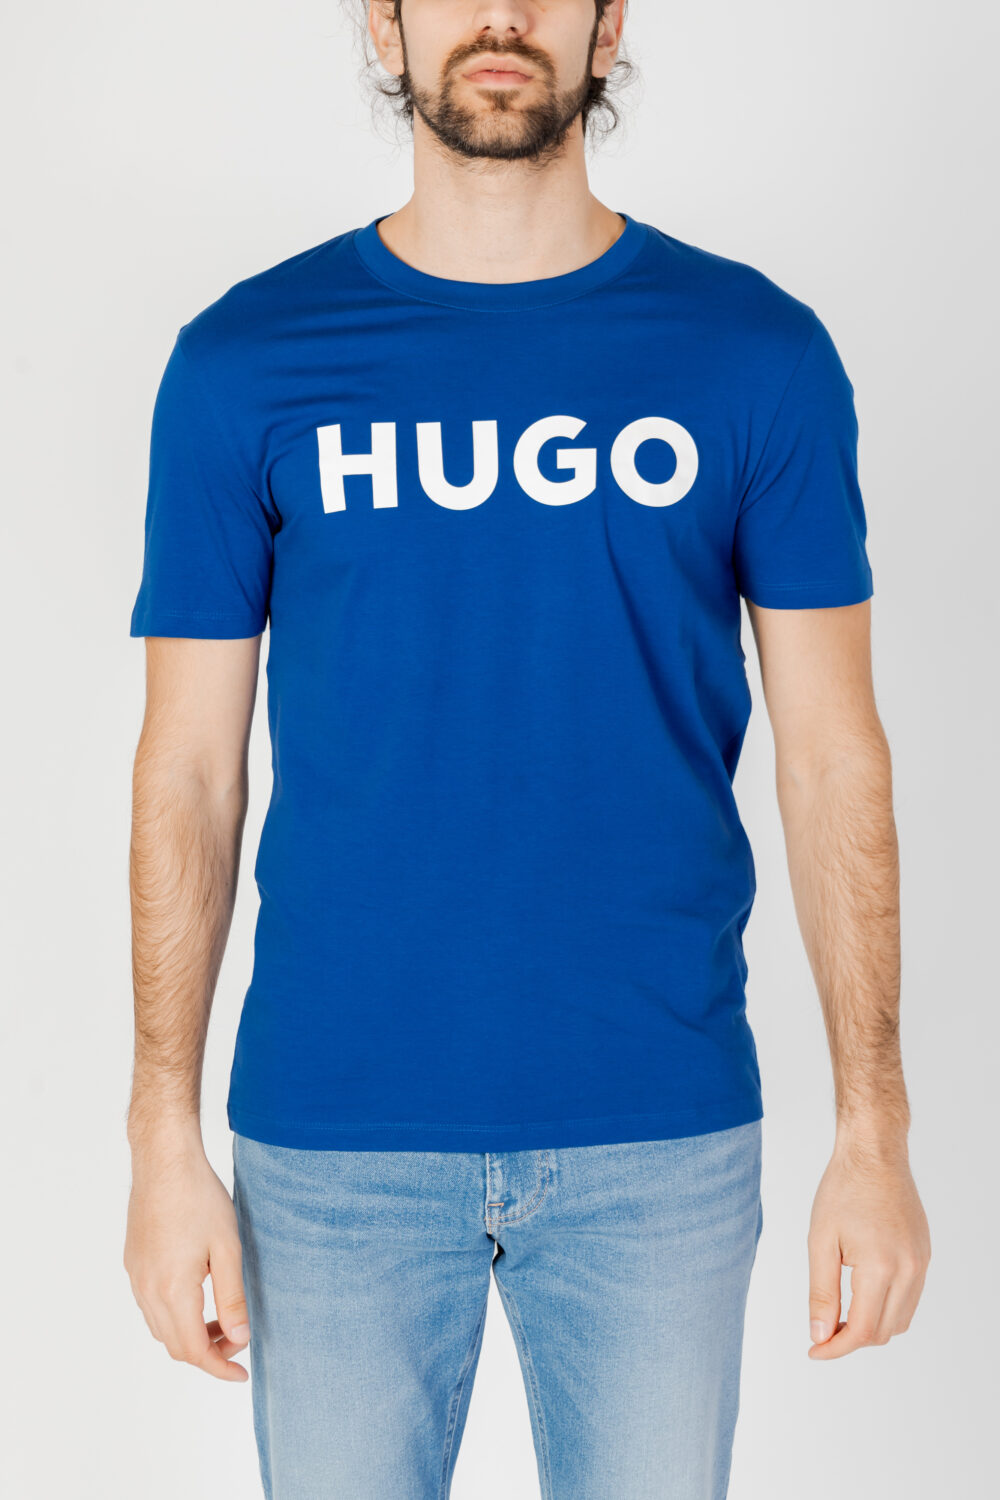 T-shirt Hugo Dulivio 10229761 01 Blu - Foto 5